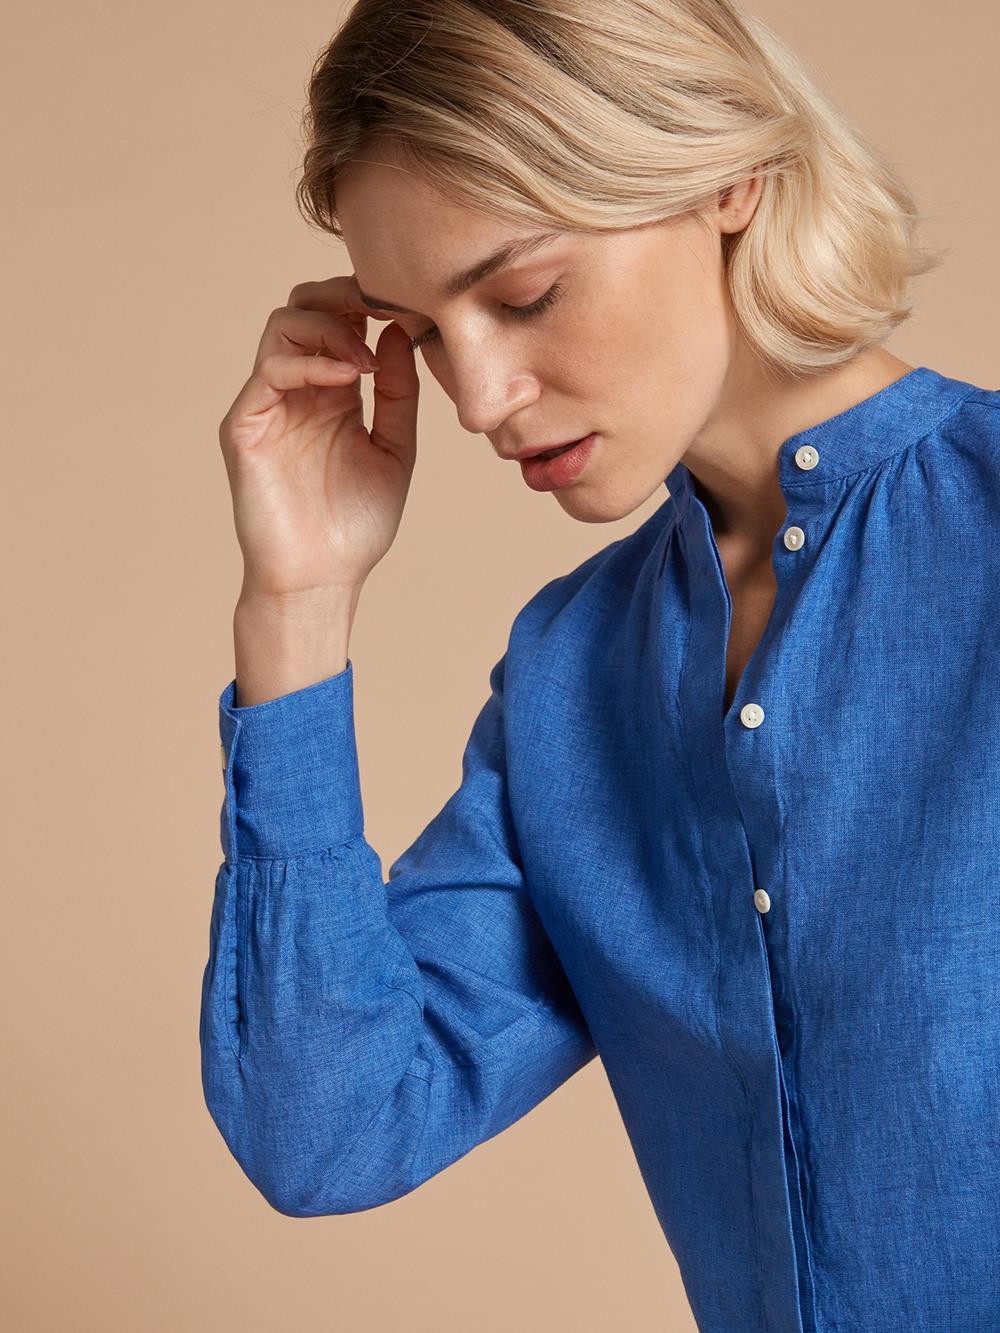 Palma Seraphine blauw shirt